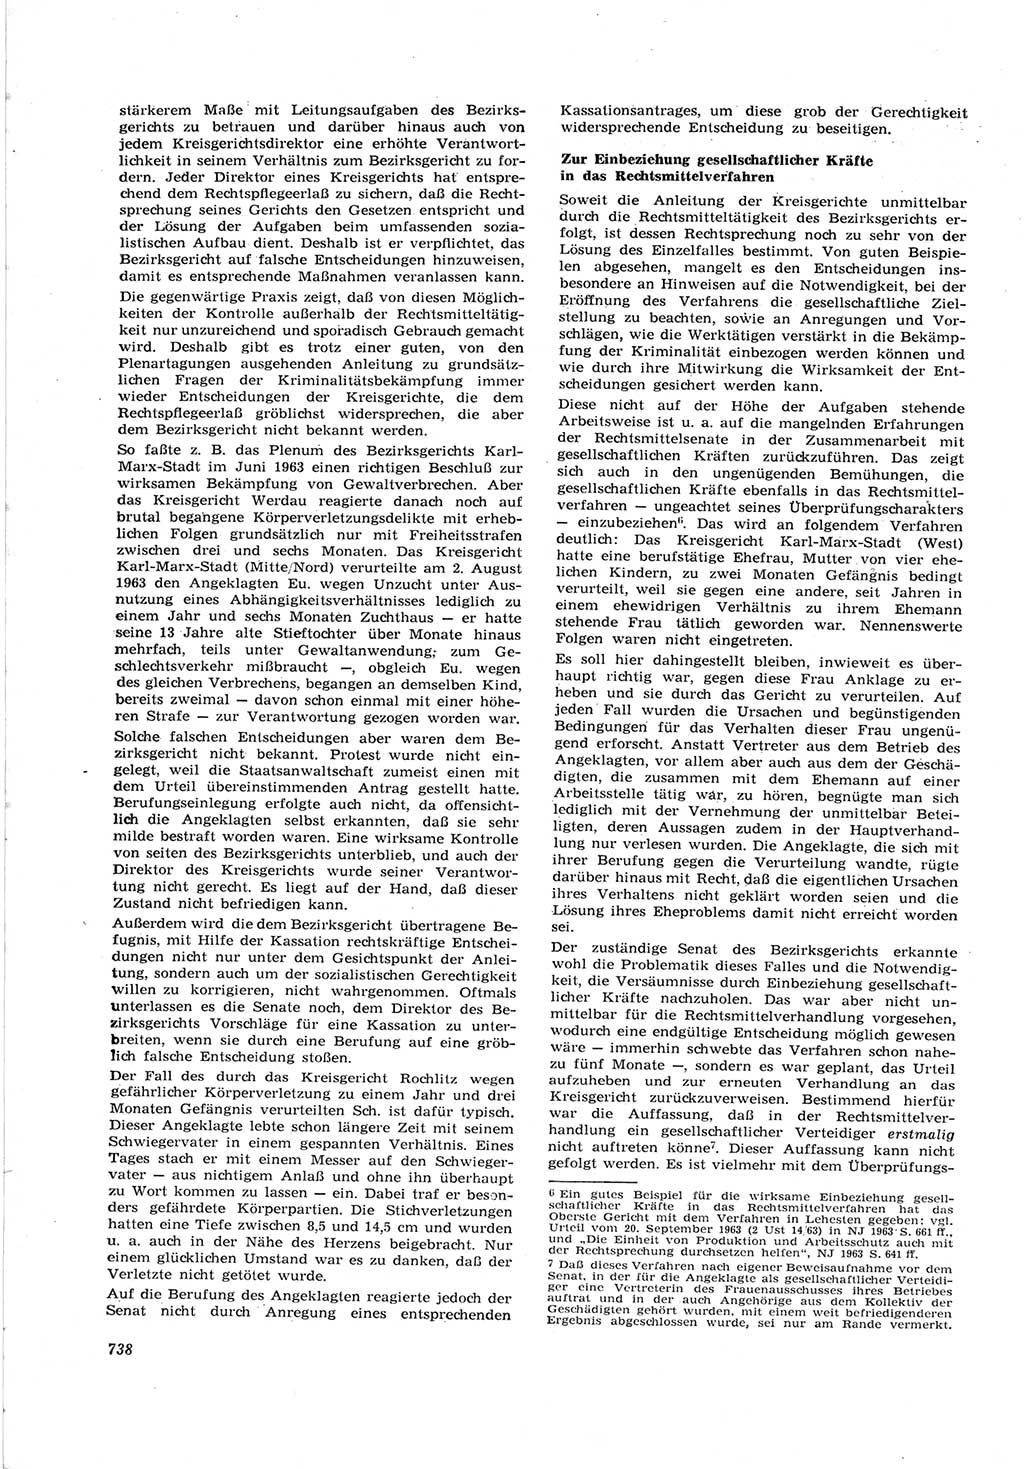 Neue Justiz (NJ), Zeitschrift für Recht und Rechtswissenschaft [Deutsche Demokratische Republik (DDR)], 17. Jahrgang 1963, Seite 738 (NJ DDR 1963, S. 738)